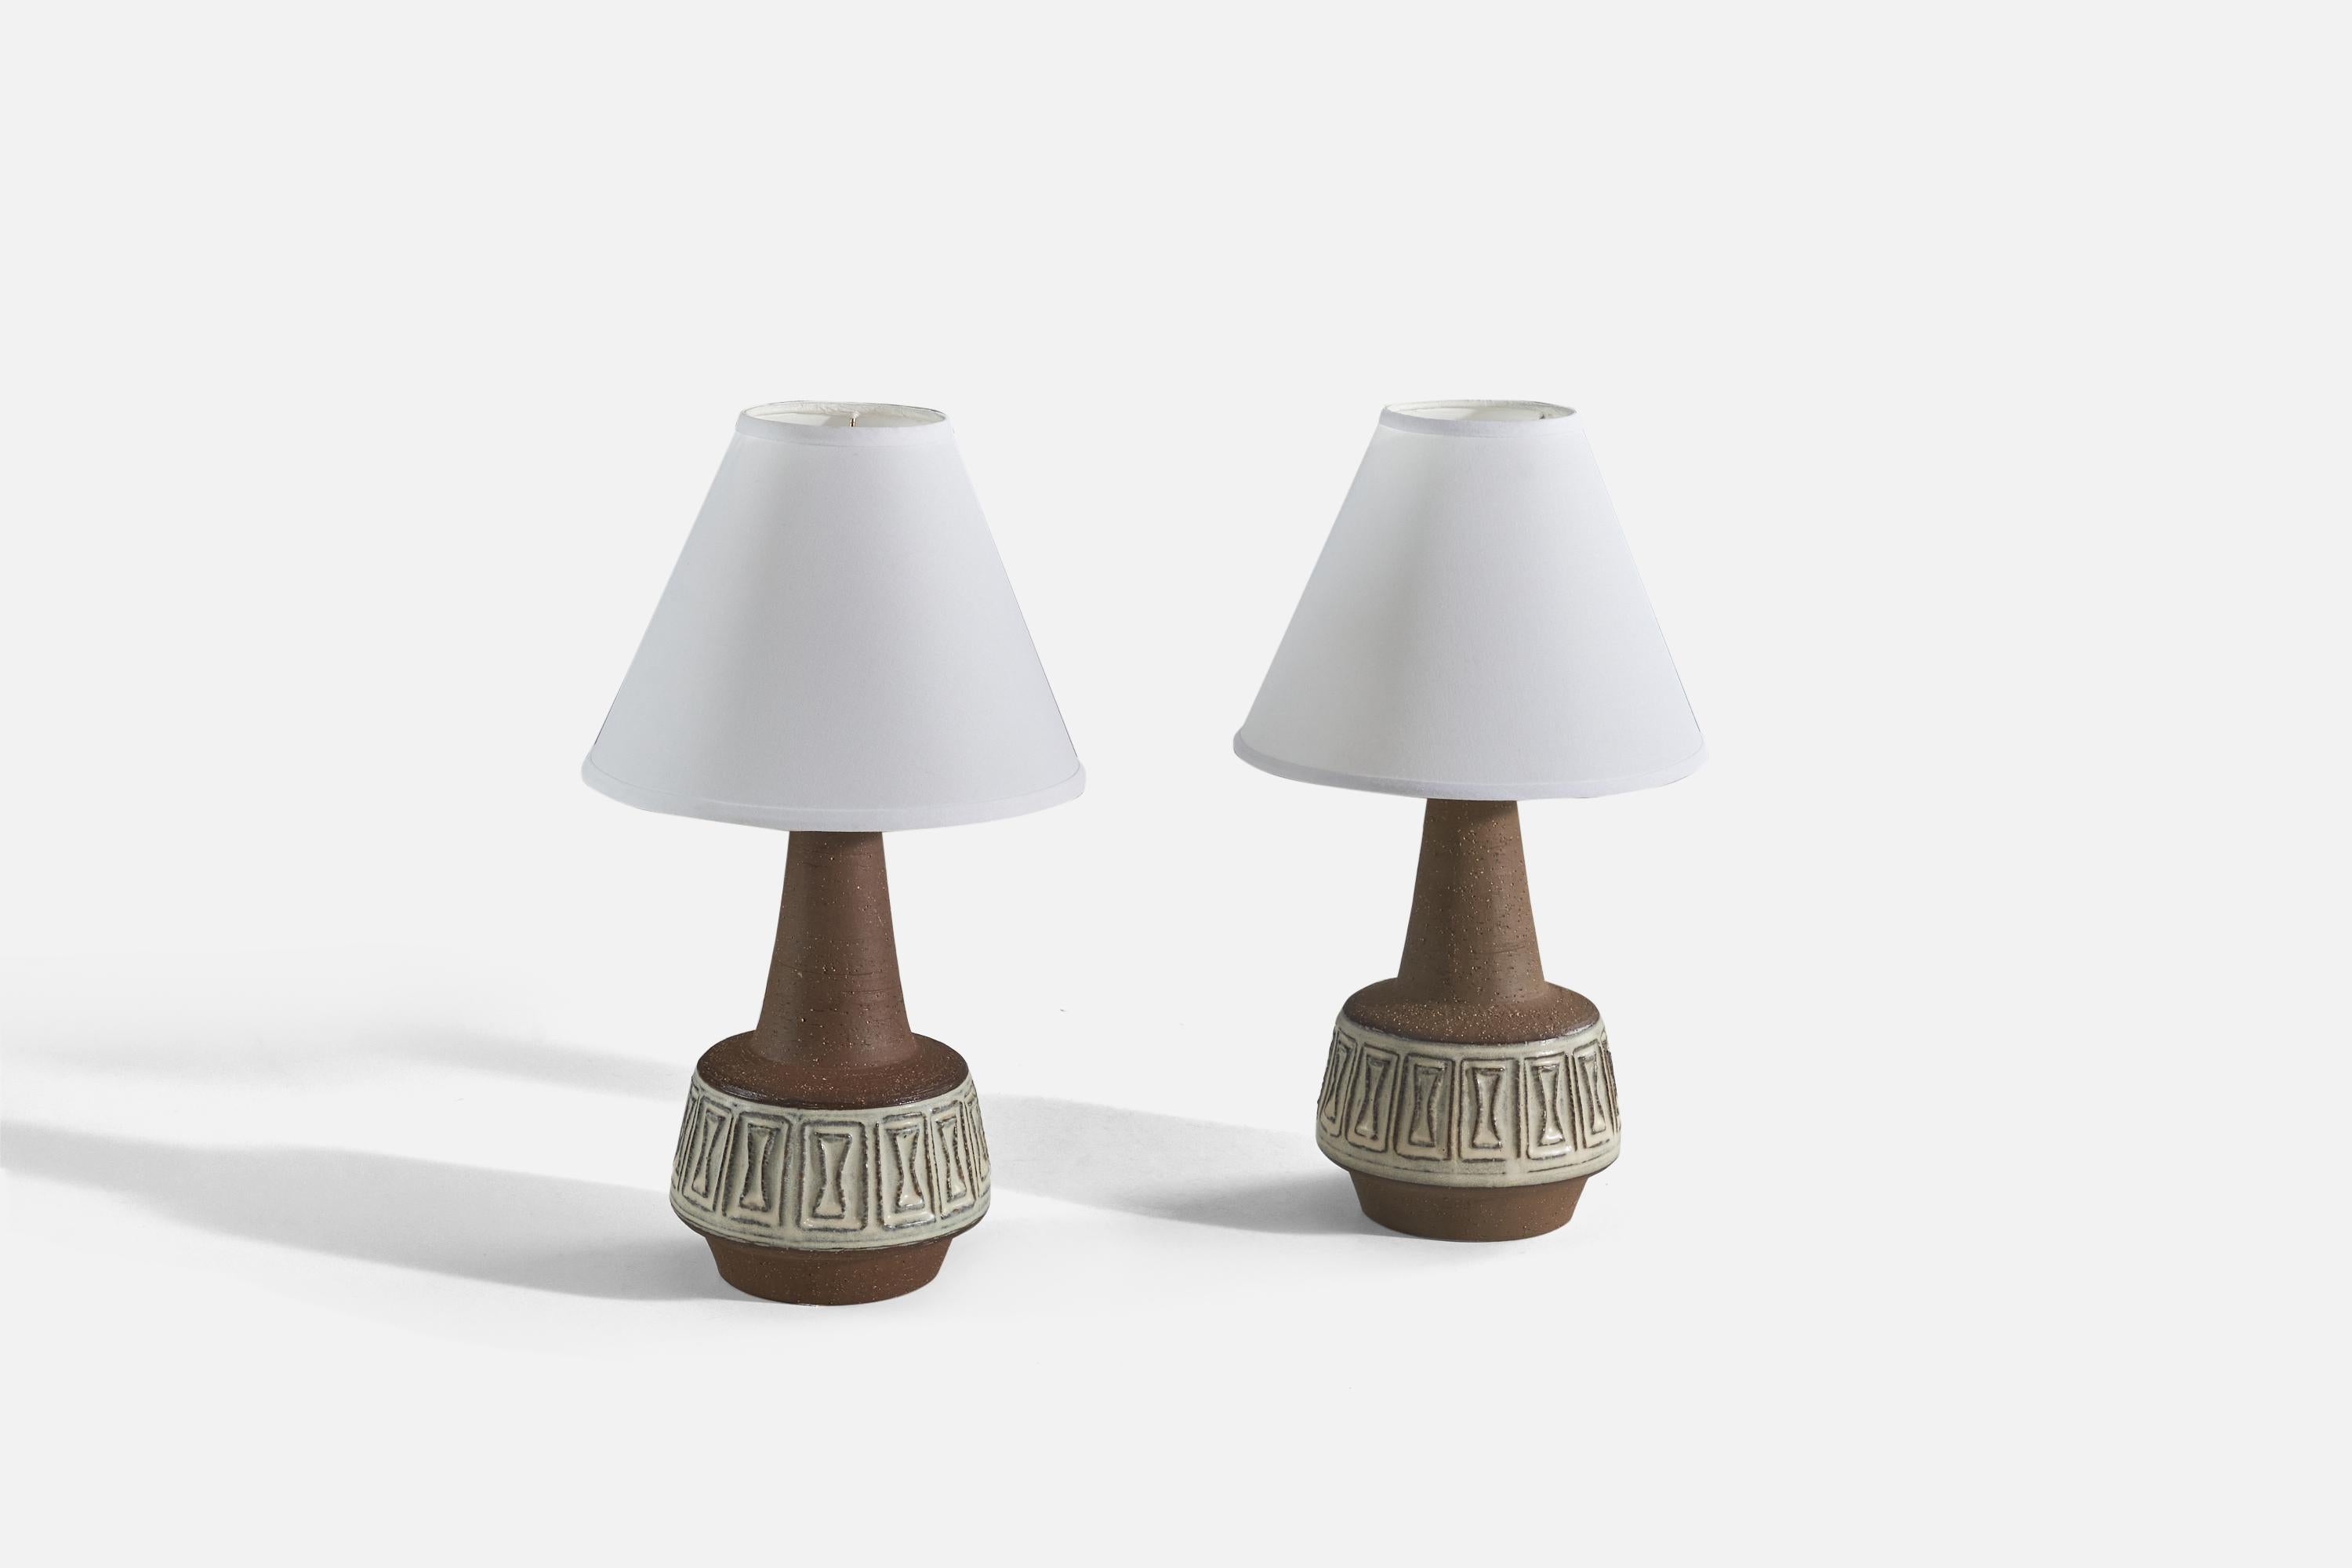 Une paire de lampes de table en grès émaillé brun, conçues et produites par Michael Andersen Keramik, Danemark, années 1960. 

Vendu sans abat-jour. 
Dimensions de la lampe (pouces) : 13.31 x 6.75 x 6.75 (Hauteur x Largeur x Profondeur)
Dimensions